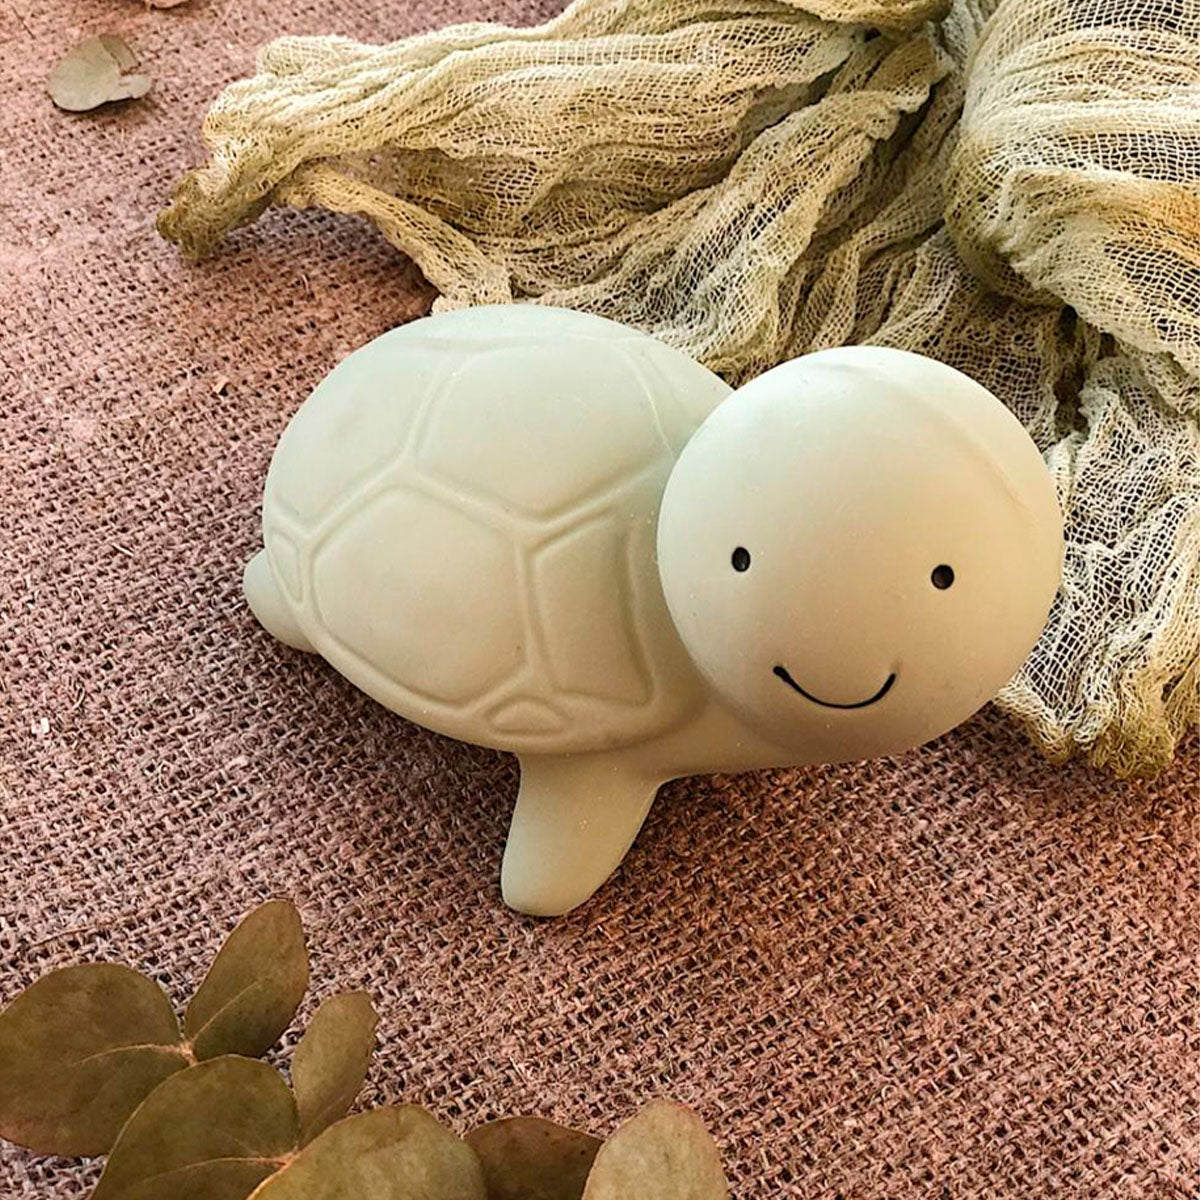 Het badspeeltje uit de collectie ‘mijn eerste oceaandiertje’ schildpad van het merk Tikiri is echt een schatje. Gemaakt van natuurlijk rubber, dus veilig om op te sabbelen of kauwen. Met een zacht belletje. VanZus